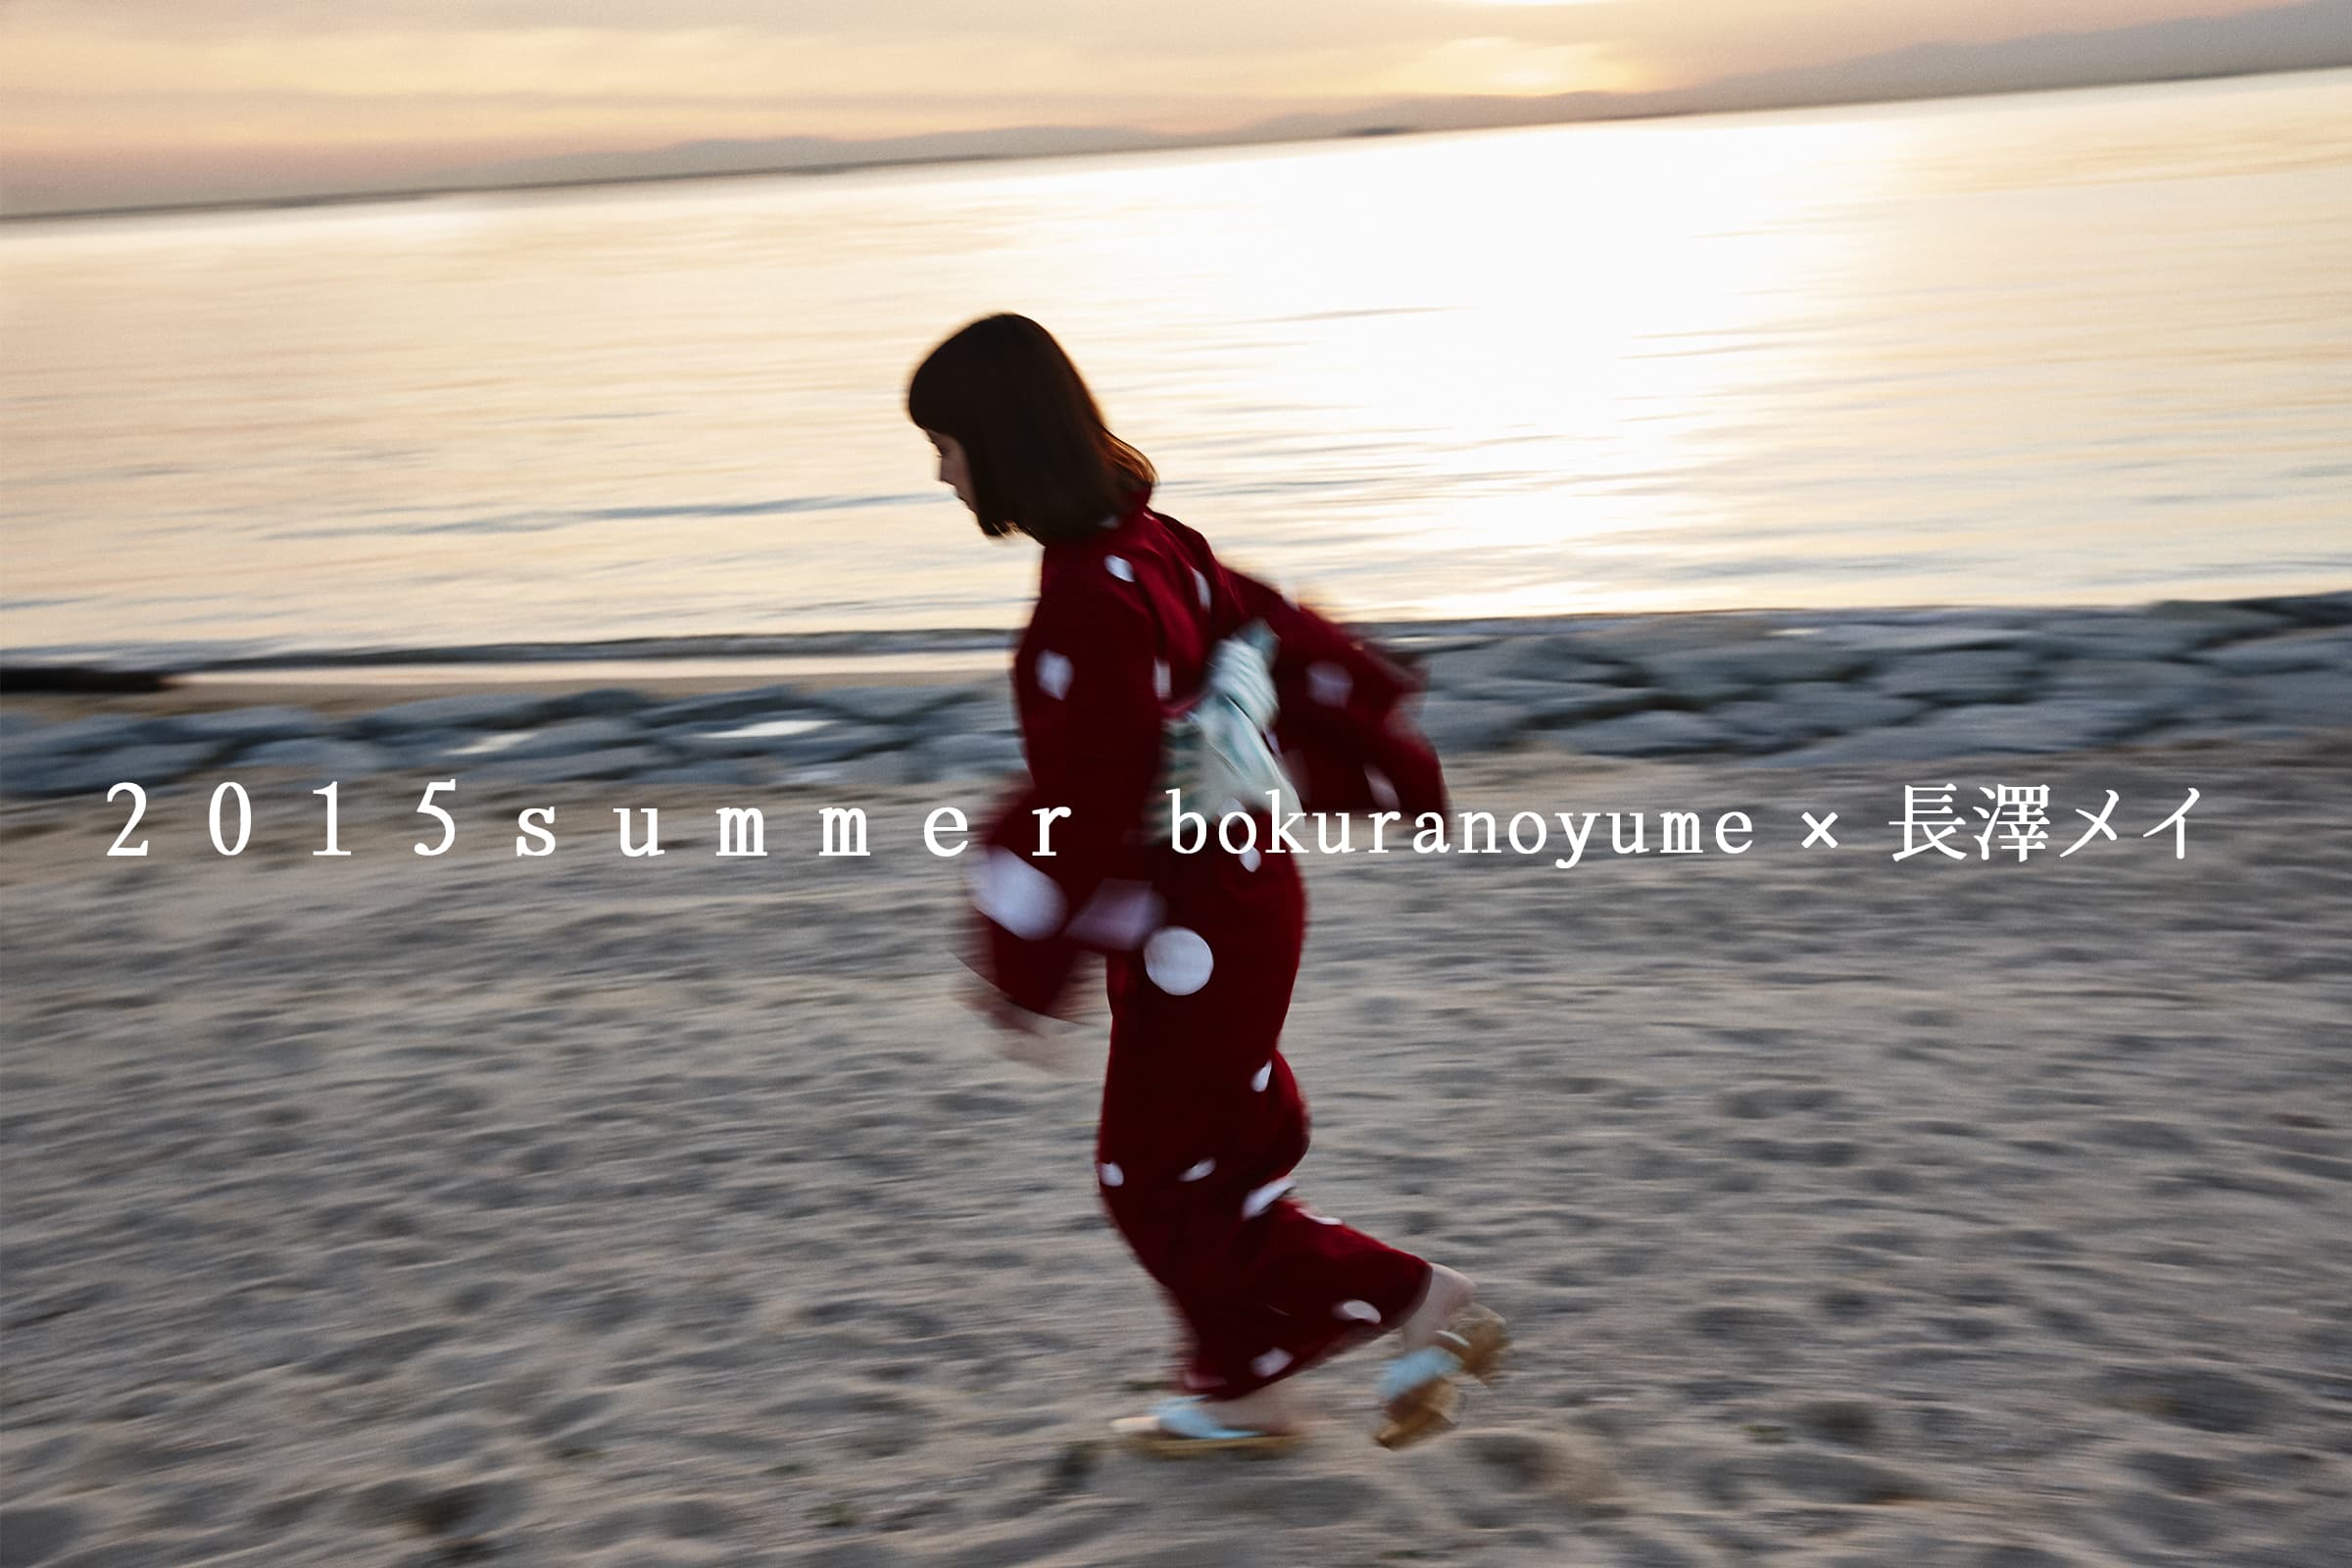 bokuranoyume 2015 summer new product